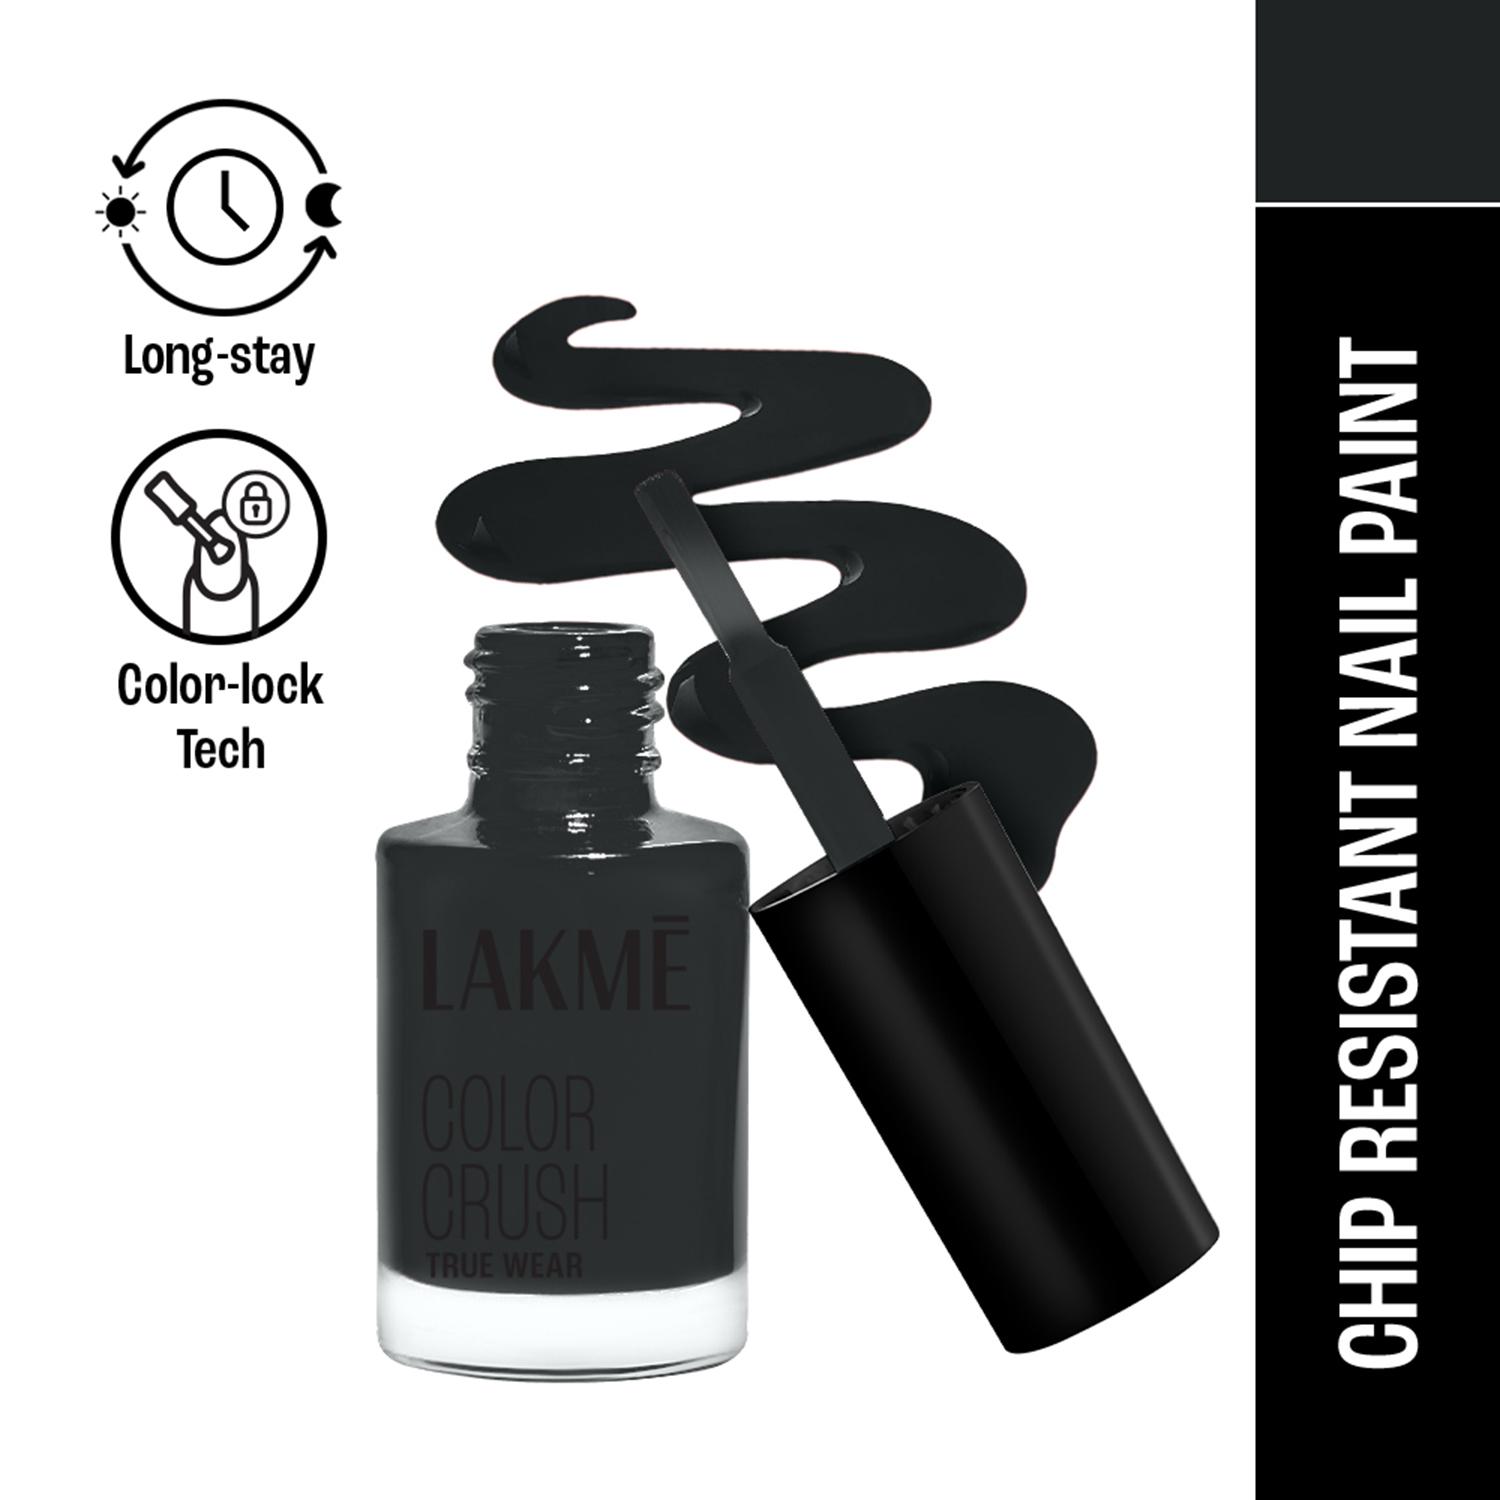 Lakme | Lakme True Wear Color Crush Nail Polish Long Lasting & Vibrant Nail Paint 67 (6 ml)